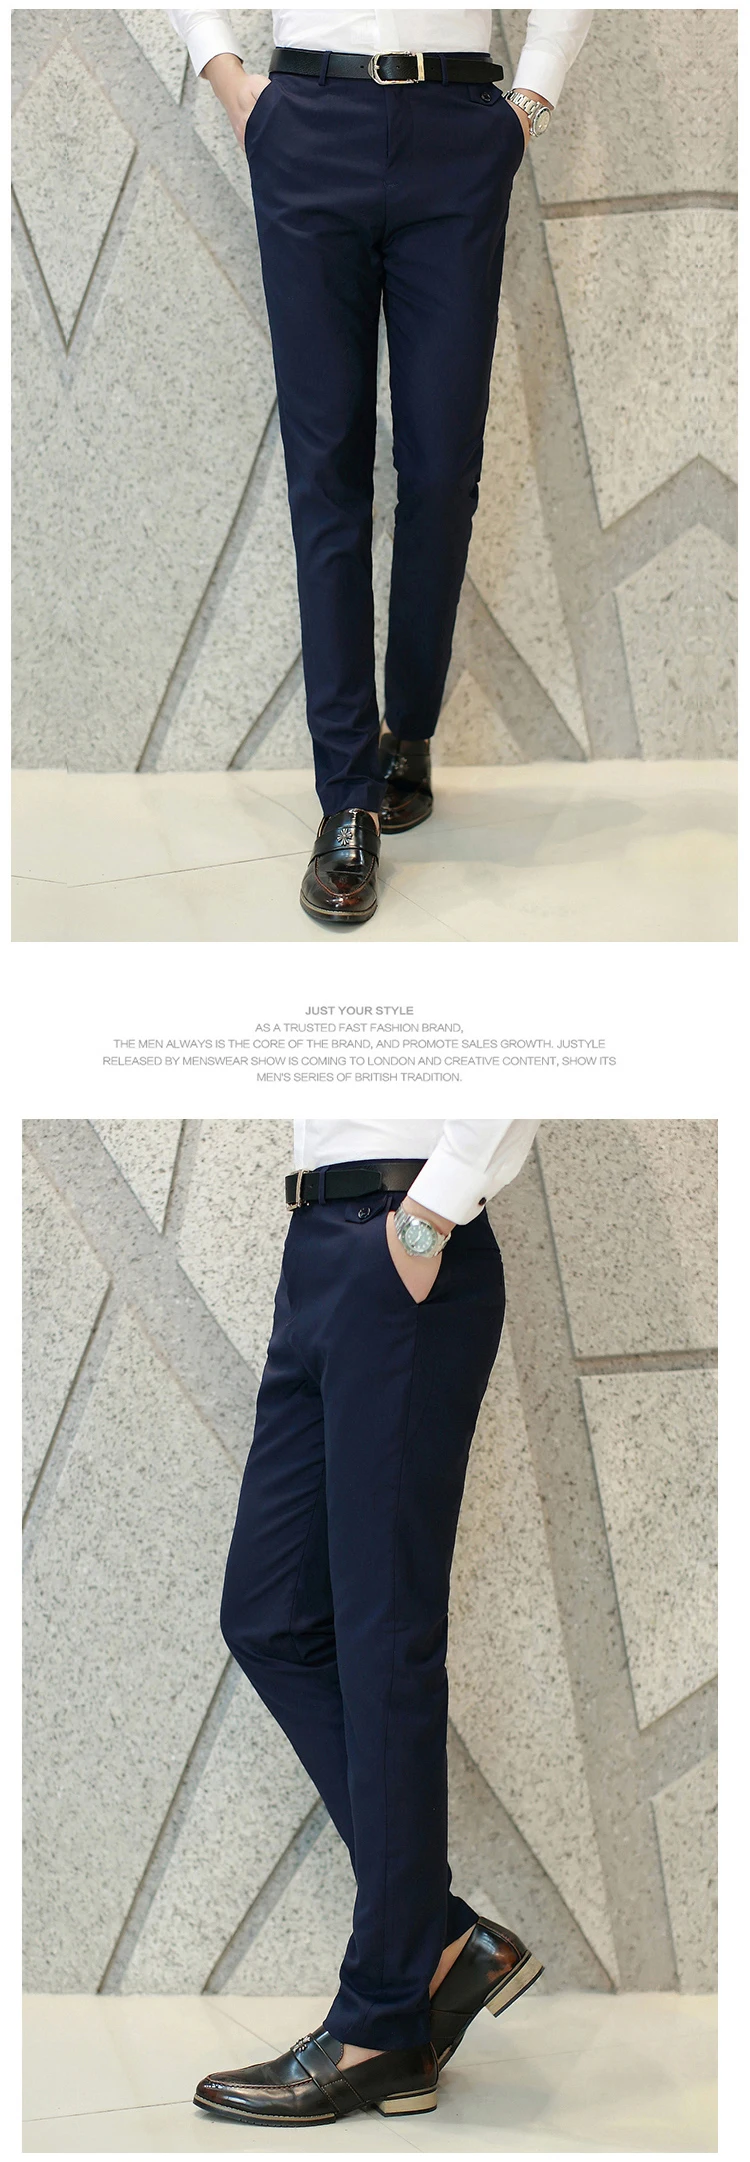 Левый rom 2019 мода Мужская однотонная брюки для делового костюма/мужской высокого качества досуг брюки/мужские повседневные брюки